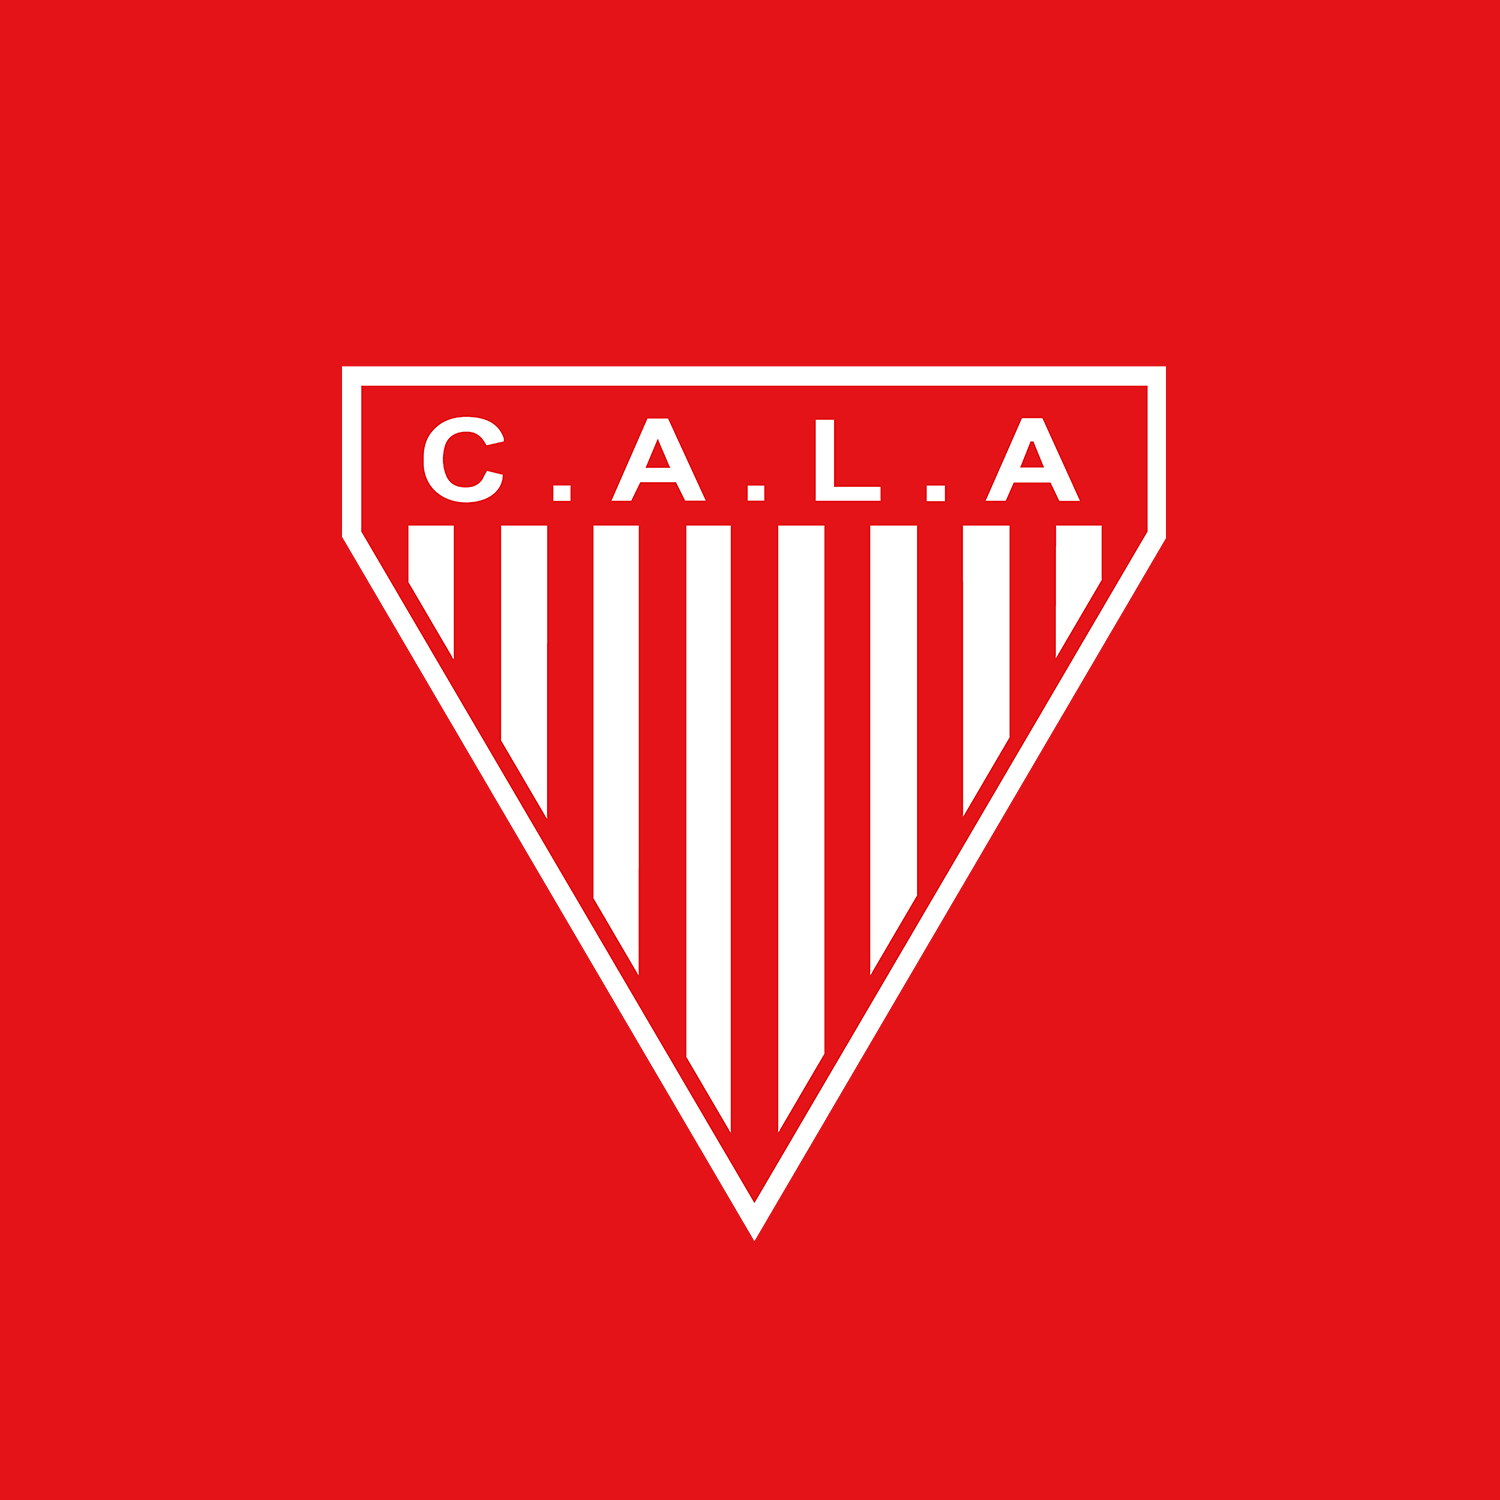 Club Atlético Los Andes